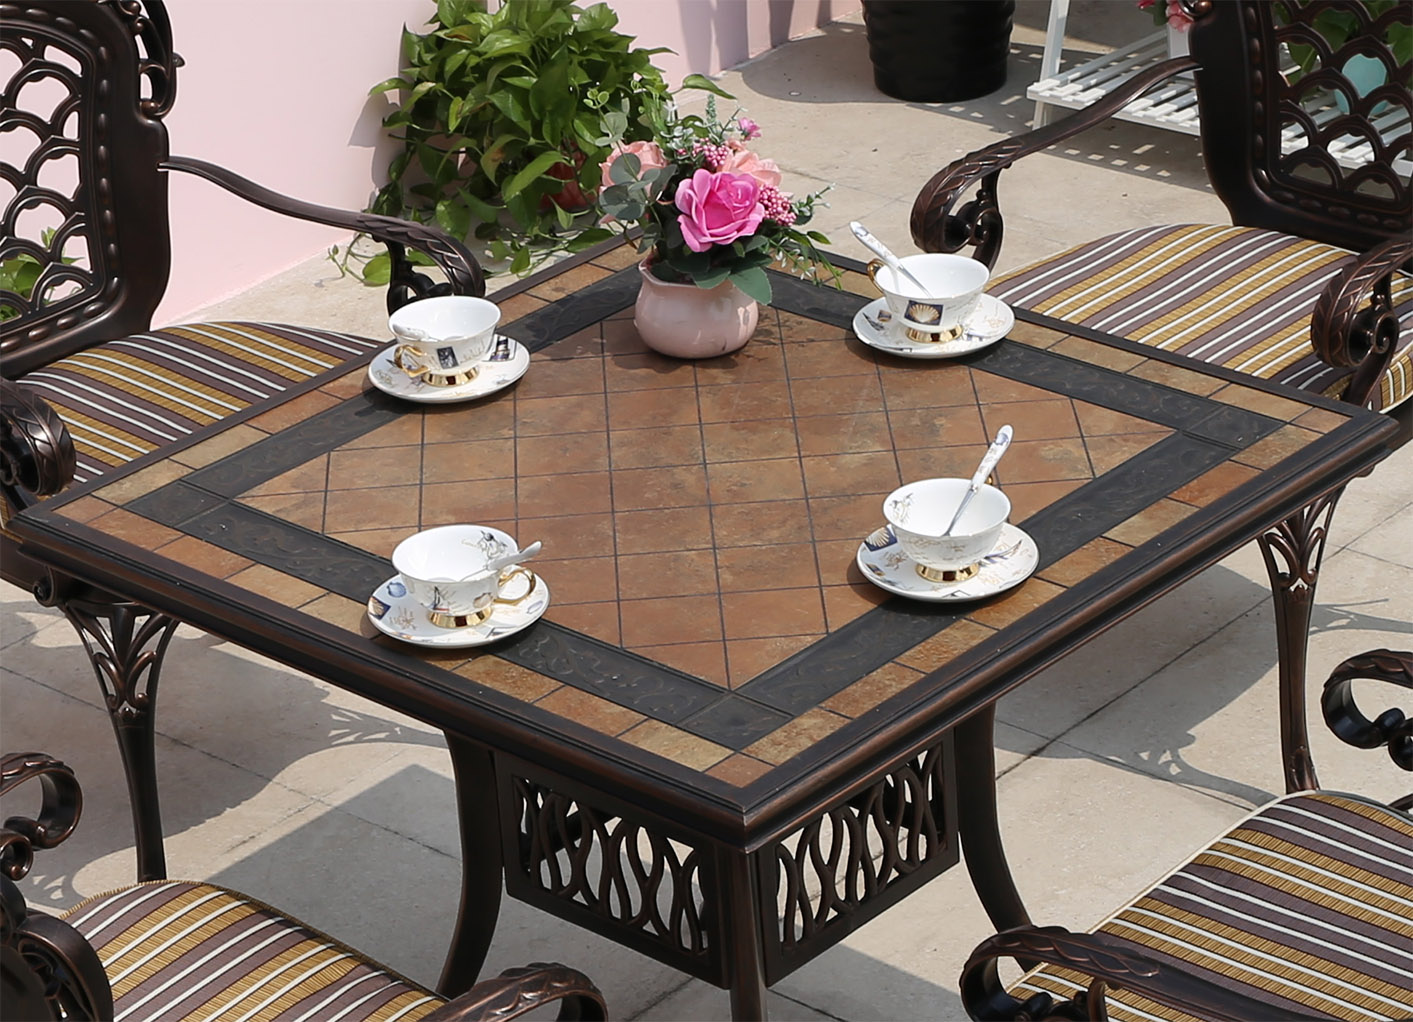 Садовый стол с керамической столешницей, стол с мозаикой из плитки для дачи, литая металлическая мебель для сада от производителя, стол садовый кованый квадратный, мебель для летних кафе, чугунный стол с камнем